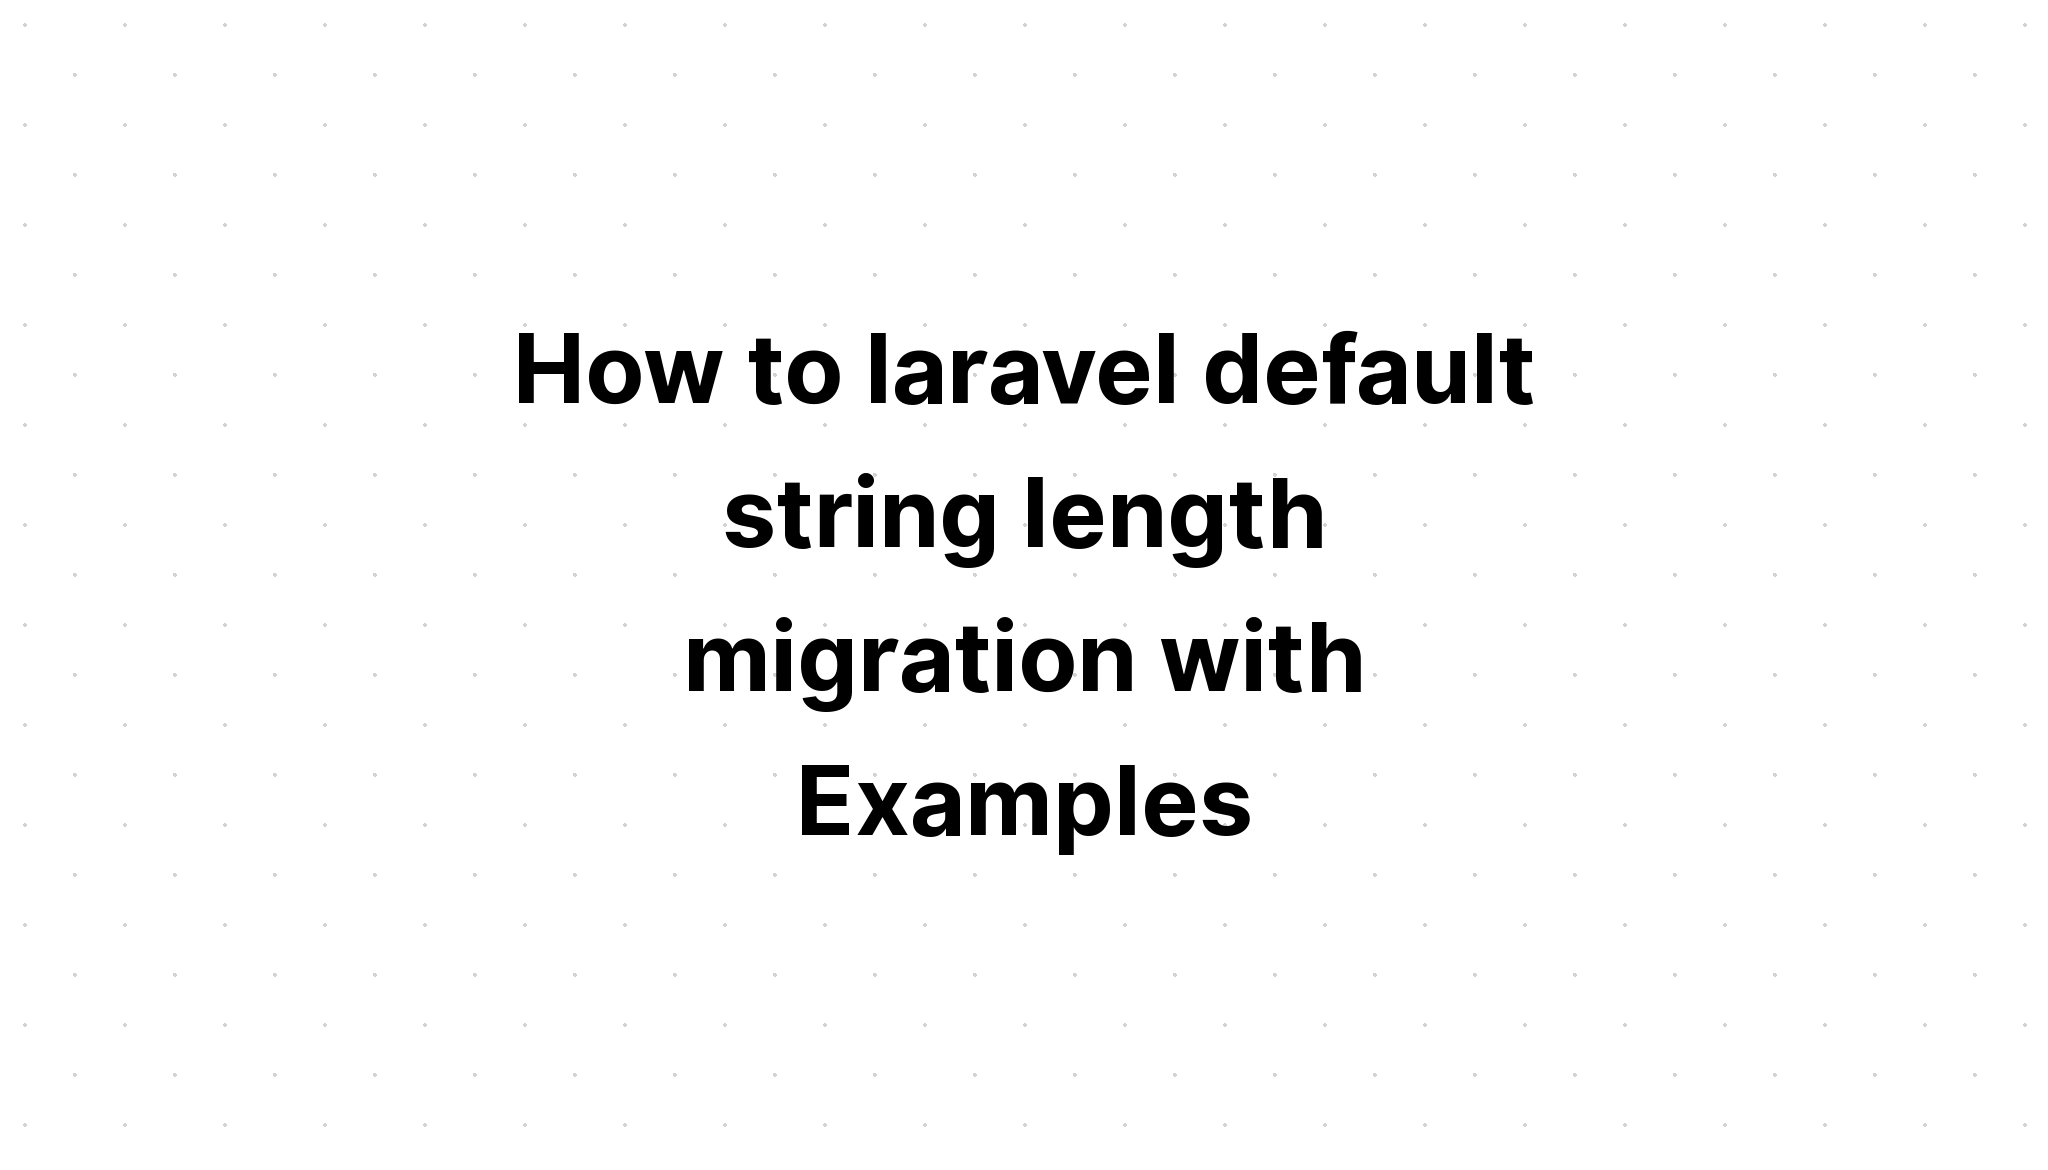 Cách di chuyển độ dài chuỗi mặc định của laravel với các ví dụ